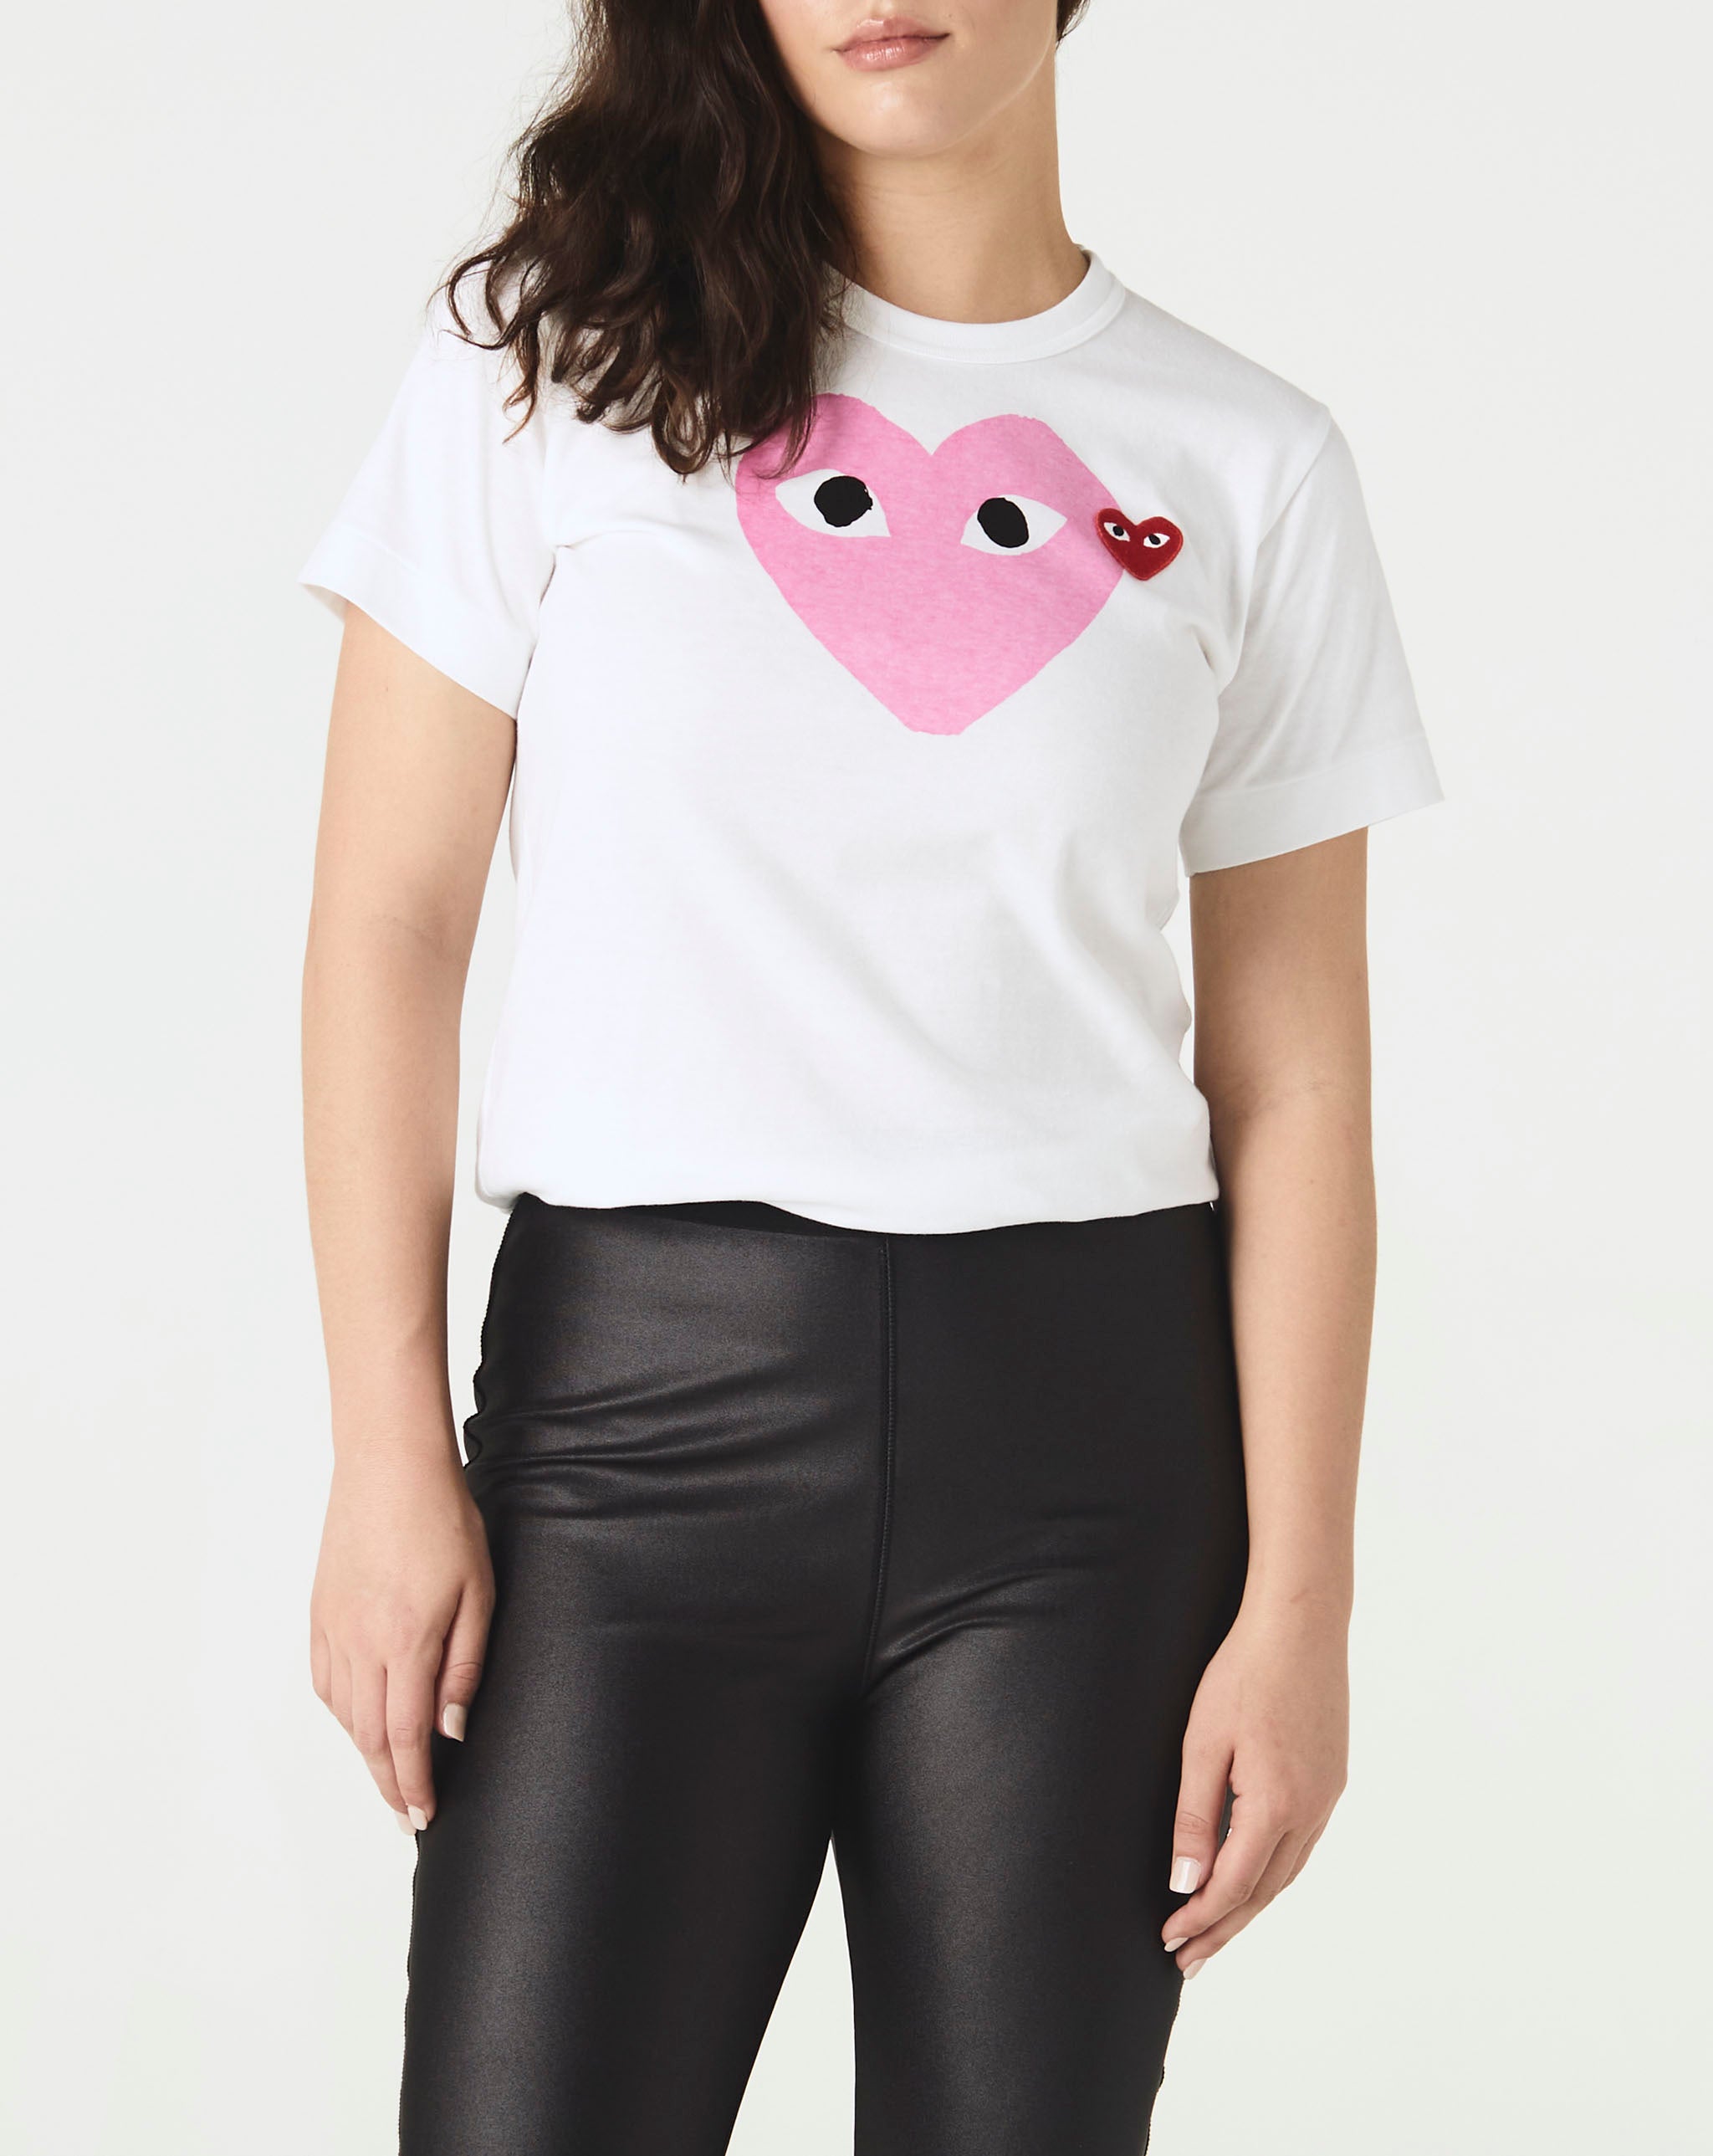 Womens Double Camo Heart T-Shirt Women's Heart T-Shirt  - Cheap Urlfreeze Jordan outlet